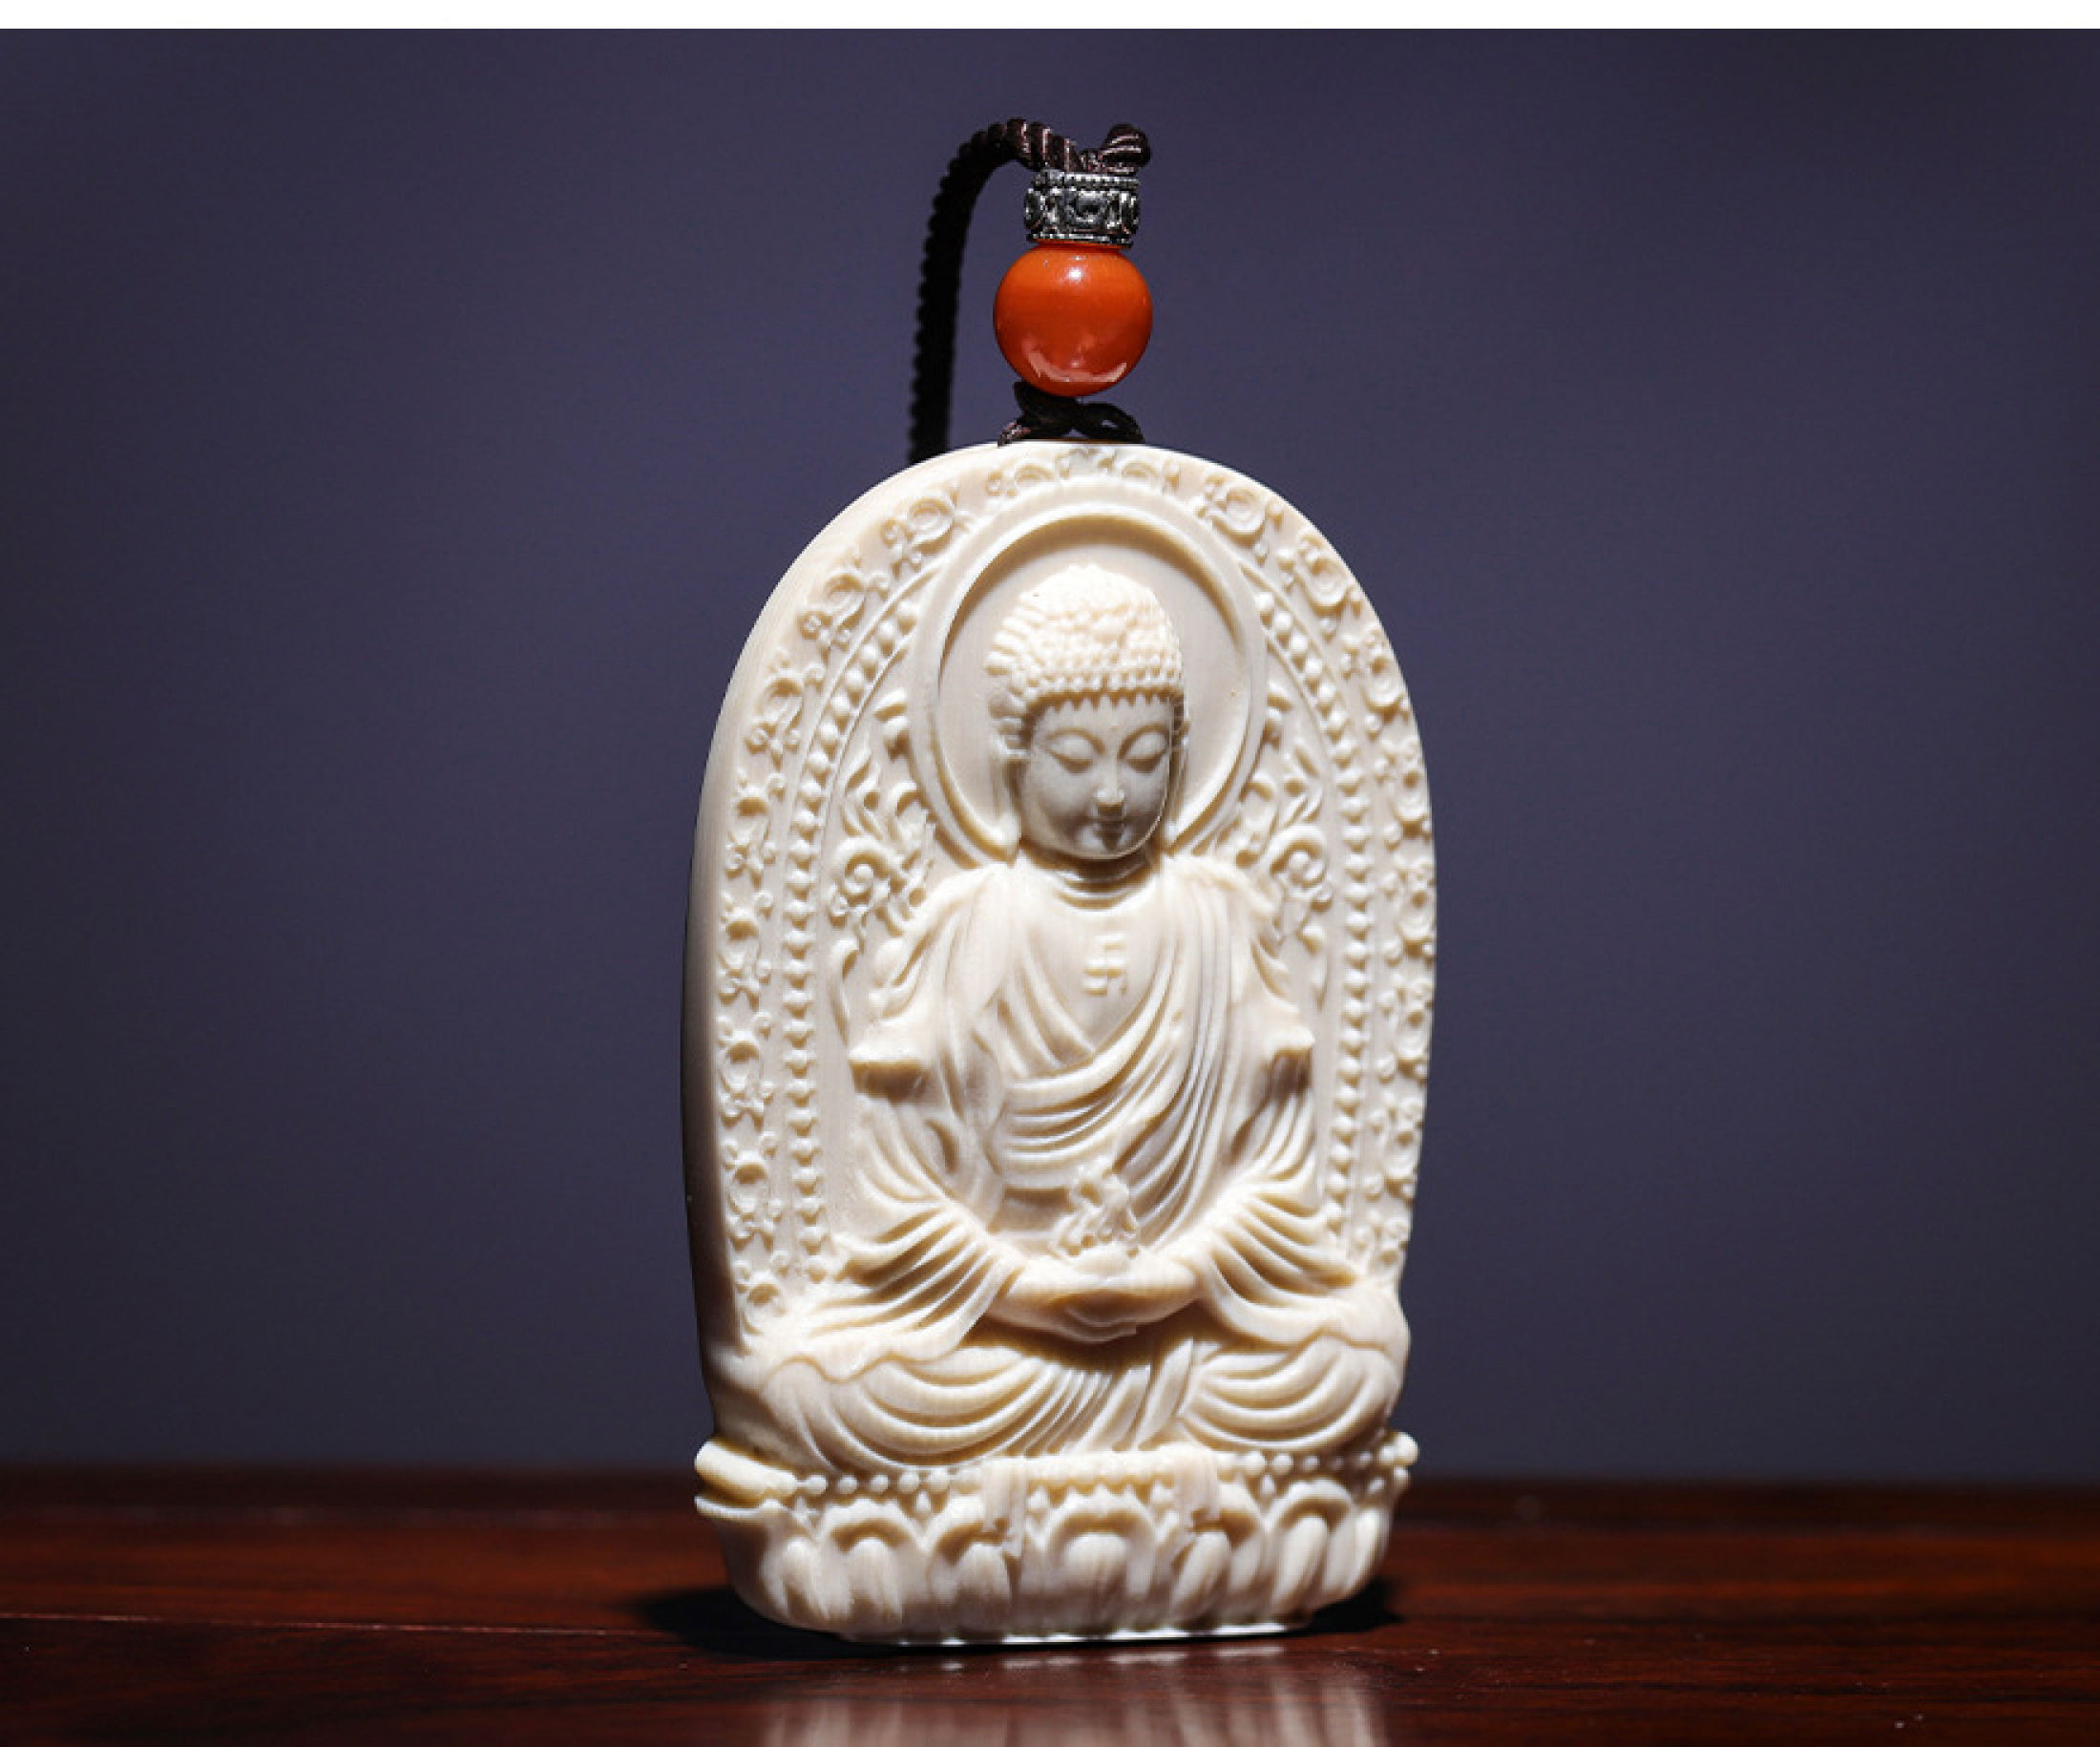 Dây chuyền Phật A Di Đà bằng trái ngà, mặt sau khắc chú - MN02 (Có dây đeo)